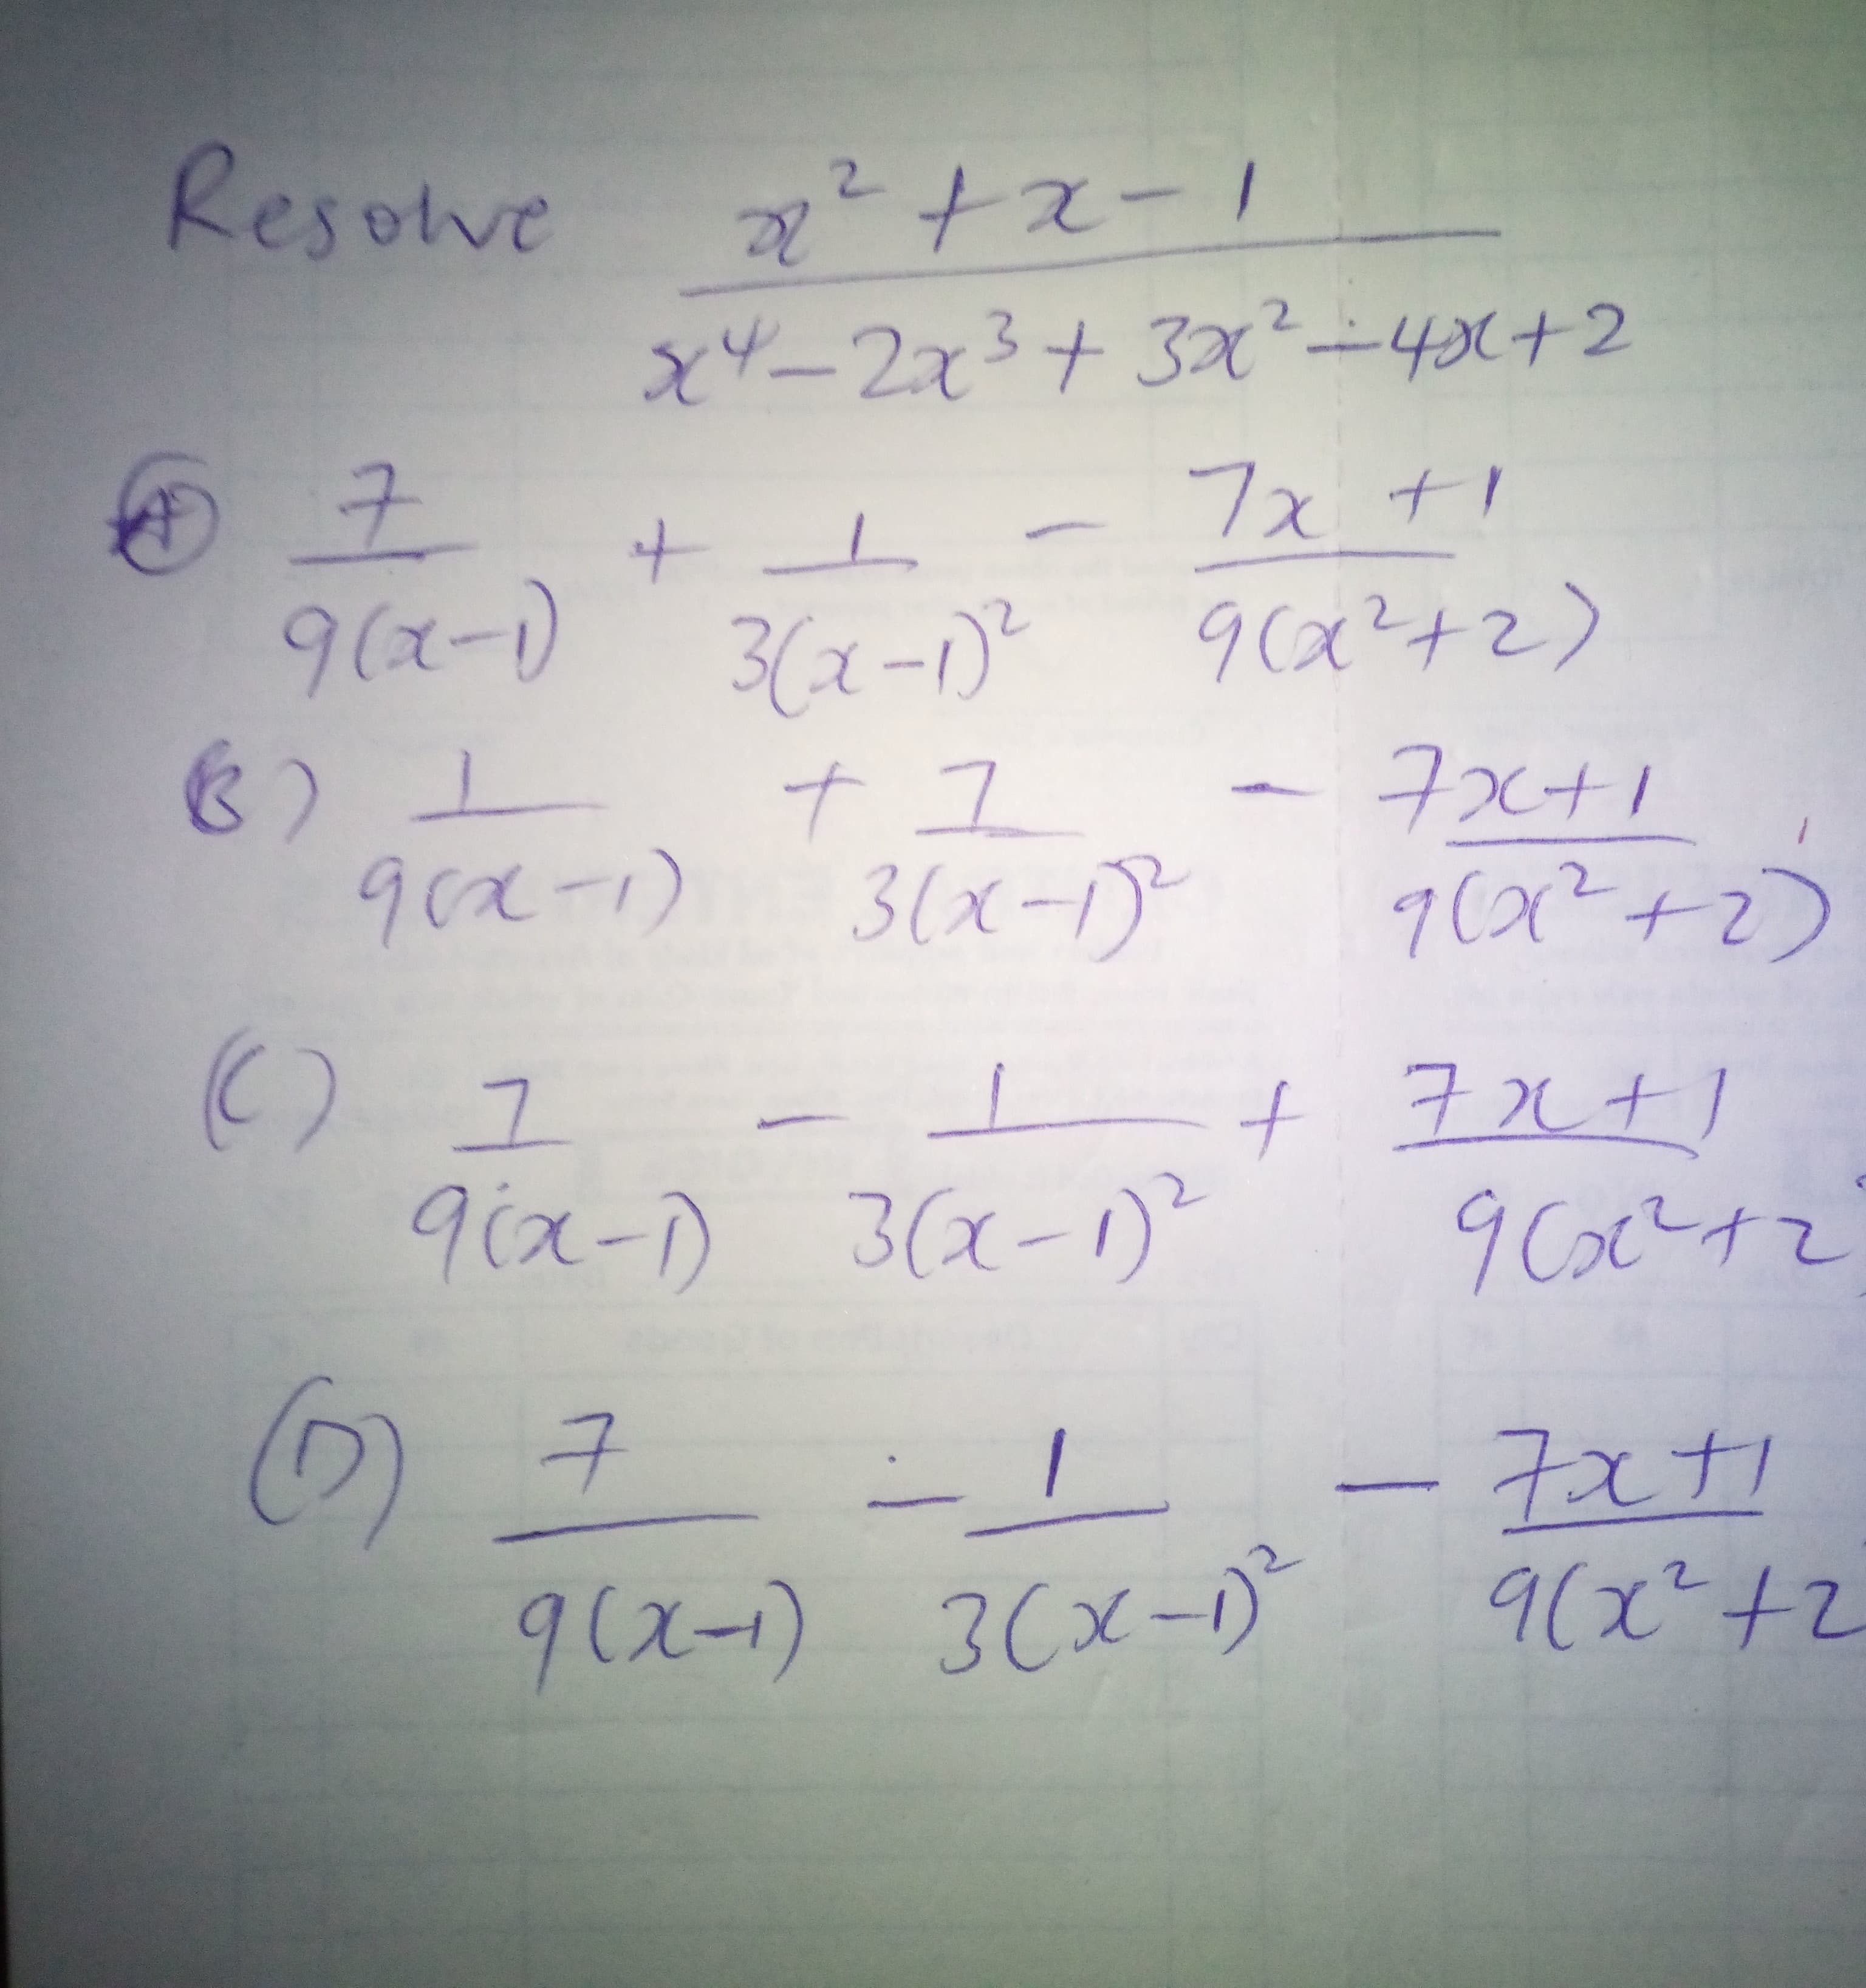 Resolve
2.
+x-
x4-2x3+32x²-4(+2
フx t1
9(x-) 3(2-1)
3(x-1²
9(x²+2)
ナユ
7x+1
90x-1)
3(x-1)
9(x?+2)
7.
t 722+1
9ix-) 3x-1)
()
9 Coc2+z
구
9(スー) 3Cx-
9(x²+2
